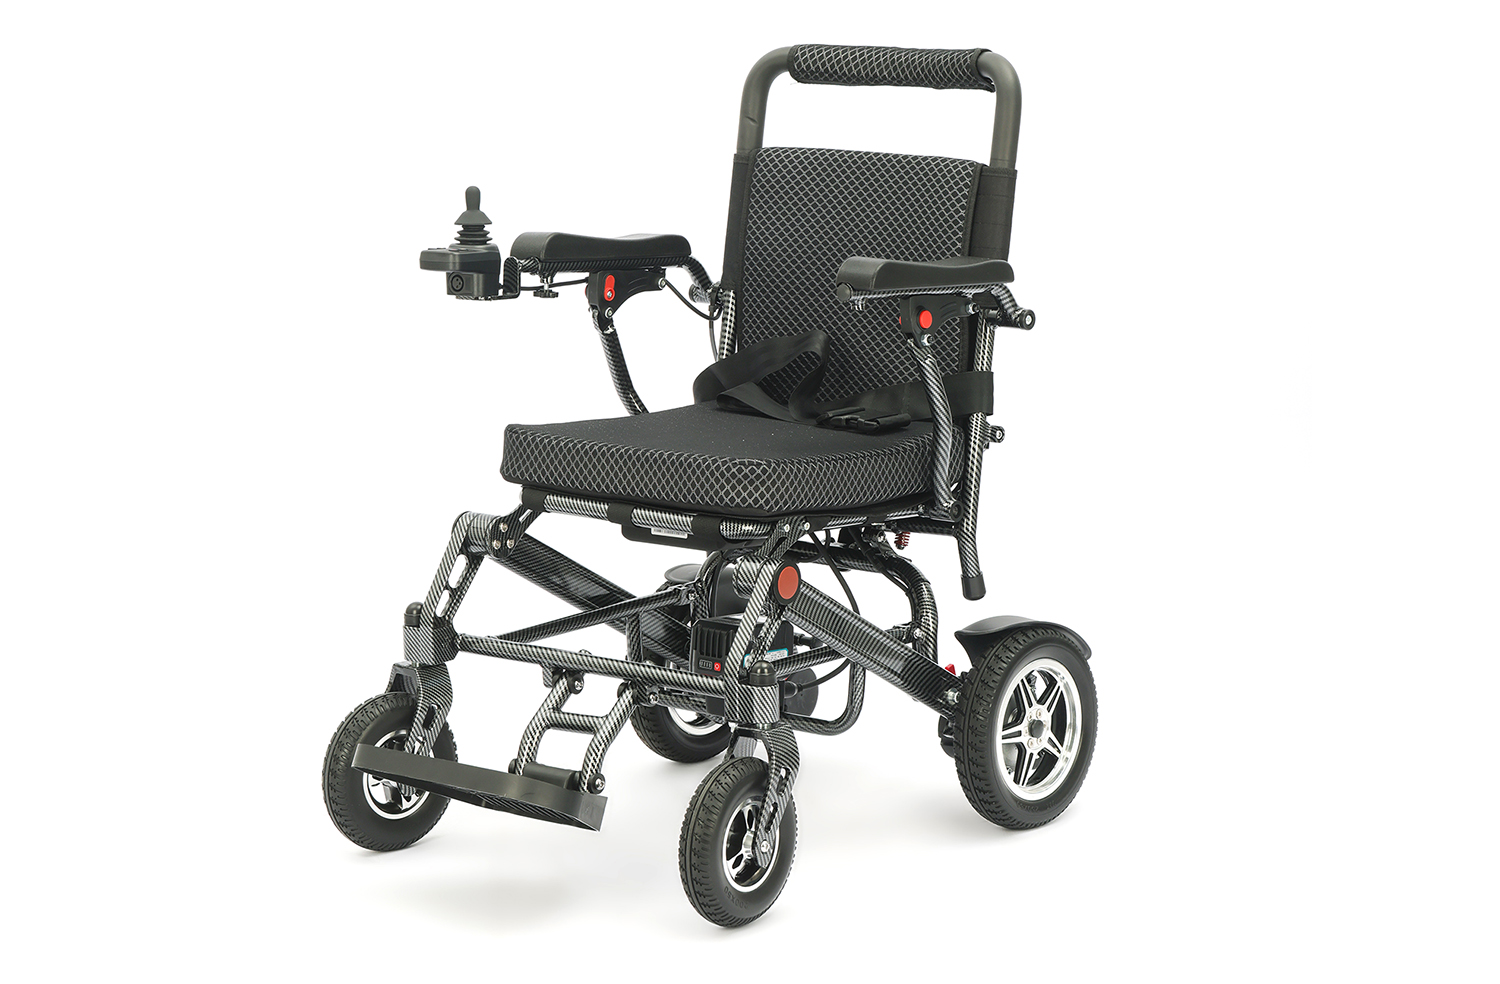 Tendência futura de desenvolvimento de cadeiras de rodas elétricas dobráveis ​​leves – Escolhendo a cadeira de rodas elétrica perfeita para suas necessidades de mobilidade